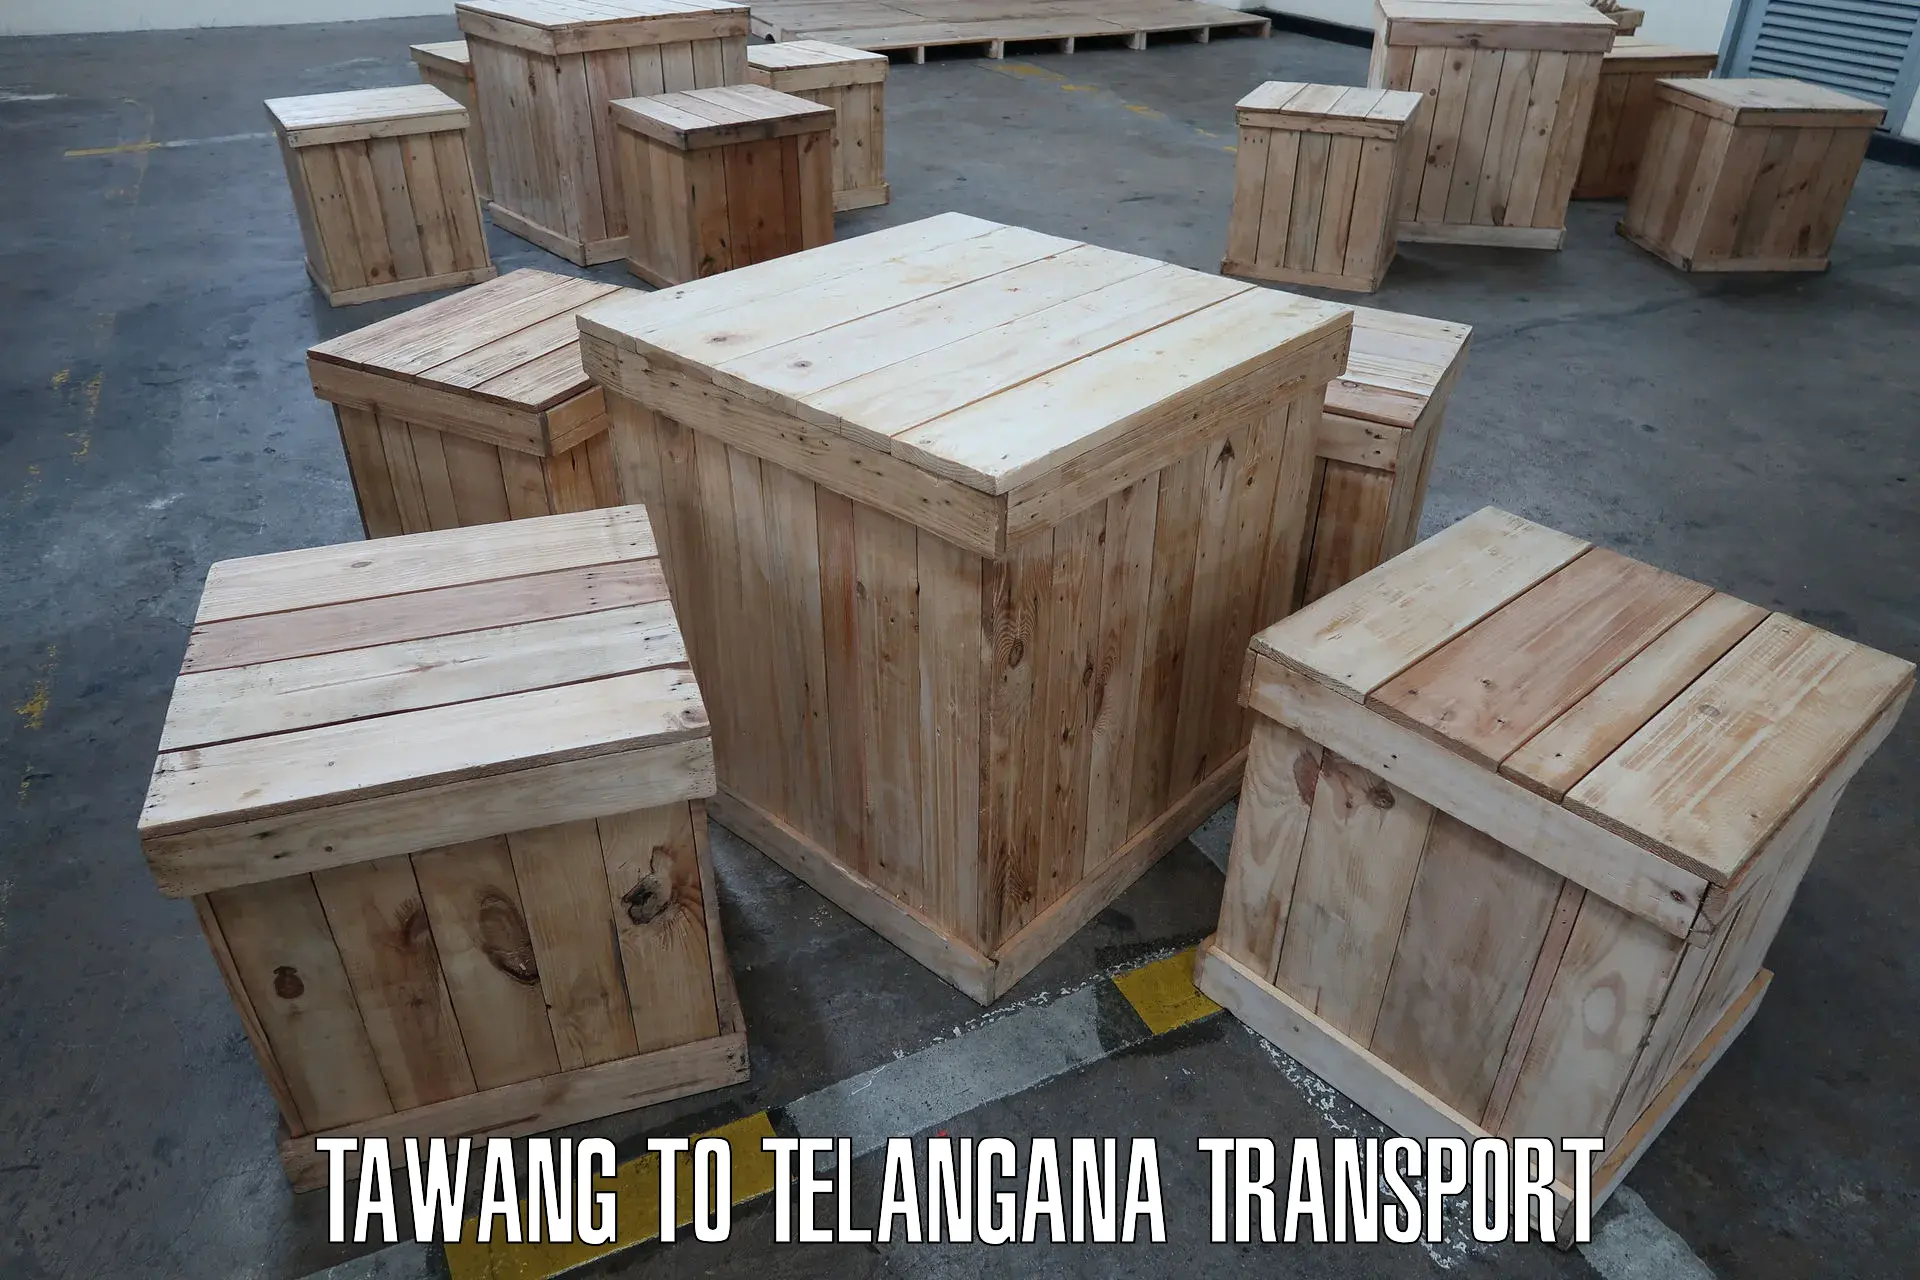 Delivery service Tawang to Mahabubabad